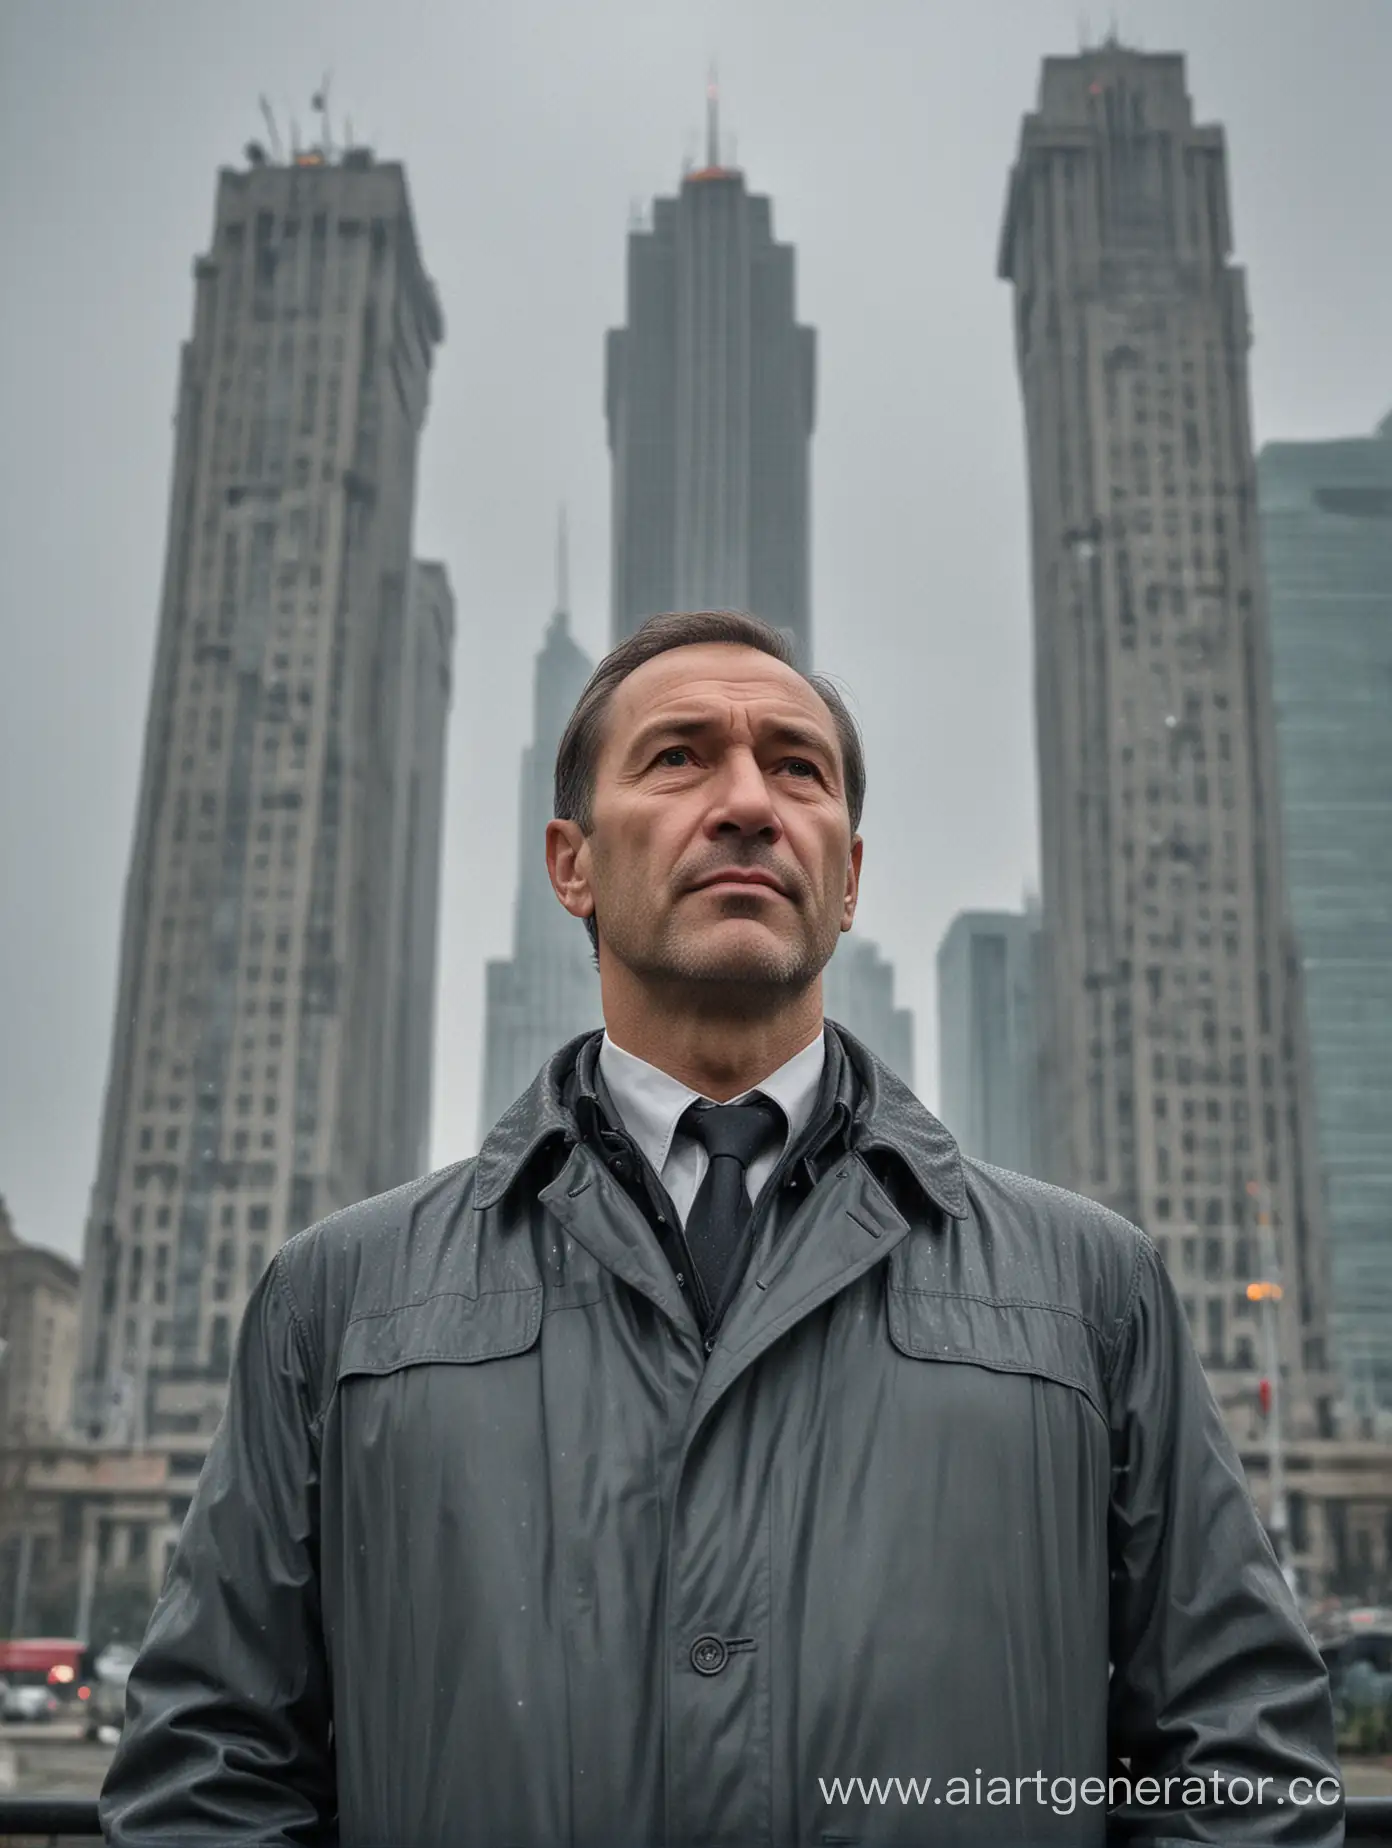 мужчина 45-50 лет стоит на фоне сталинской высотки в дождливую серую погоду 